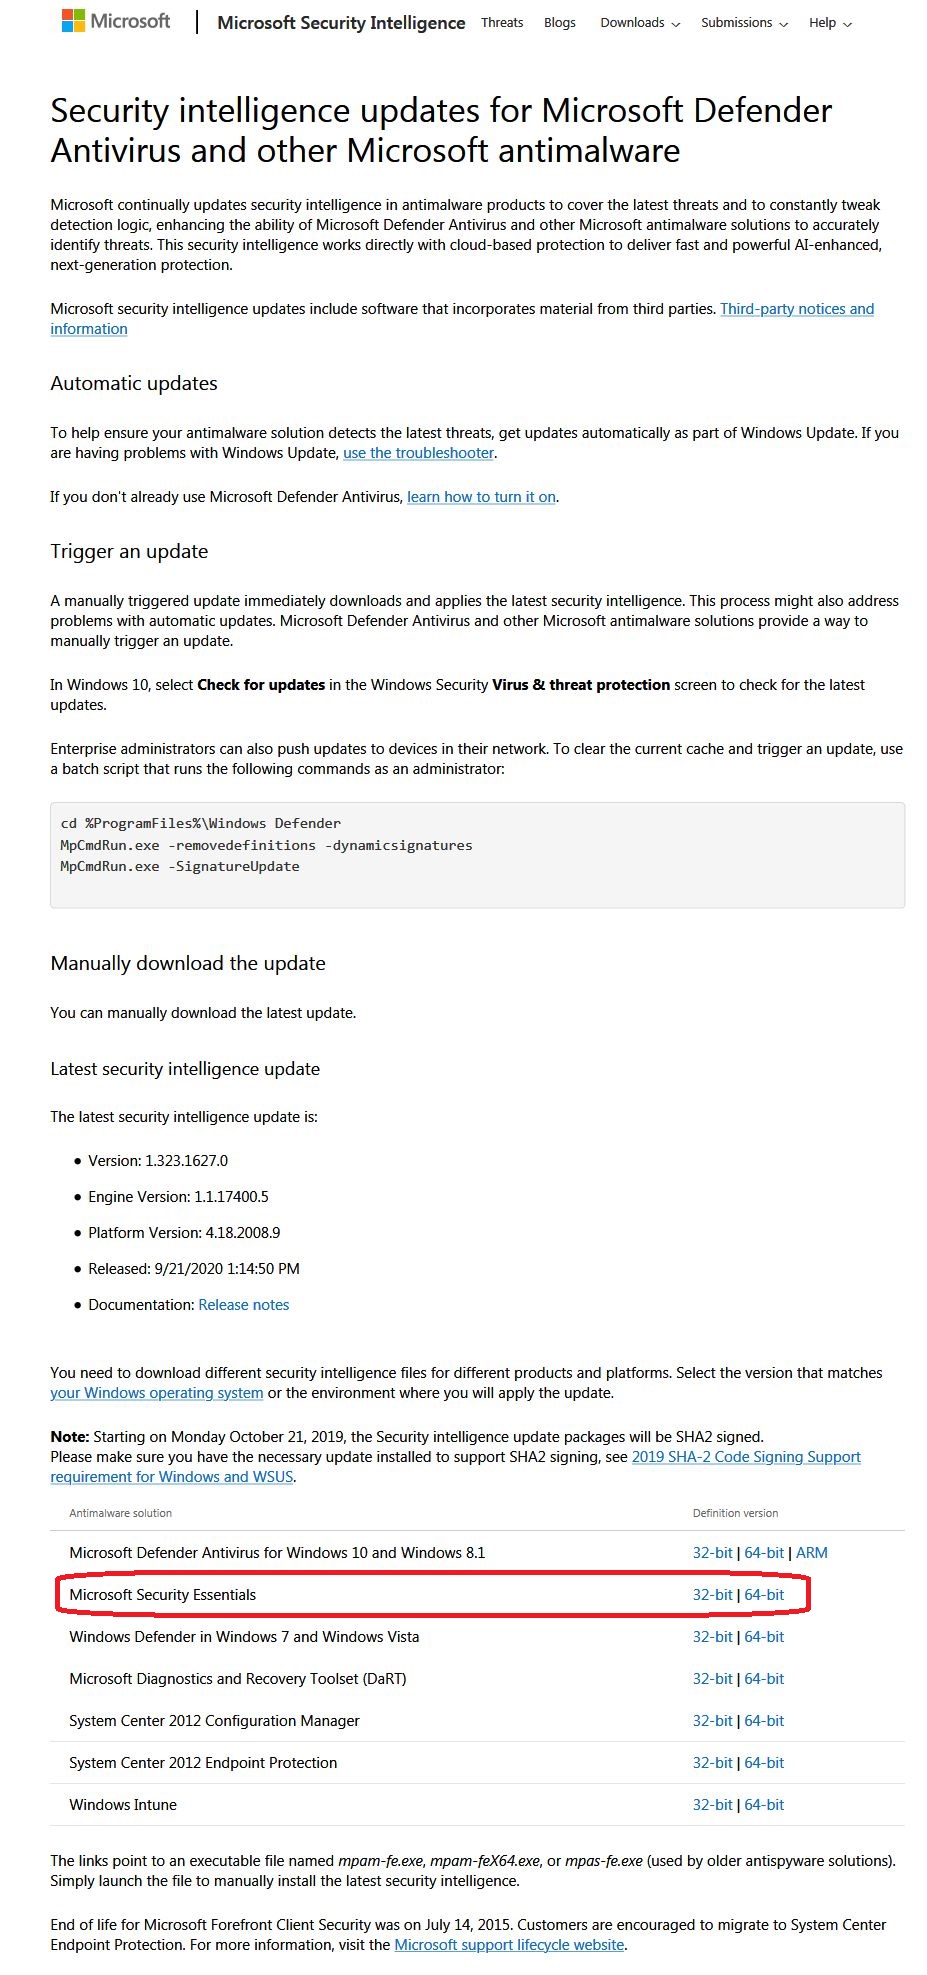 0x800700c1 error code trying to update Microsoft Security Essentials on Windows 7 230f2234-52ac-4575-9186-785e031da031?upload=true.jpg